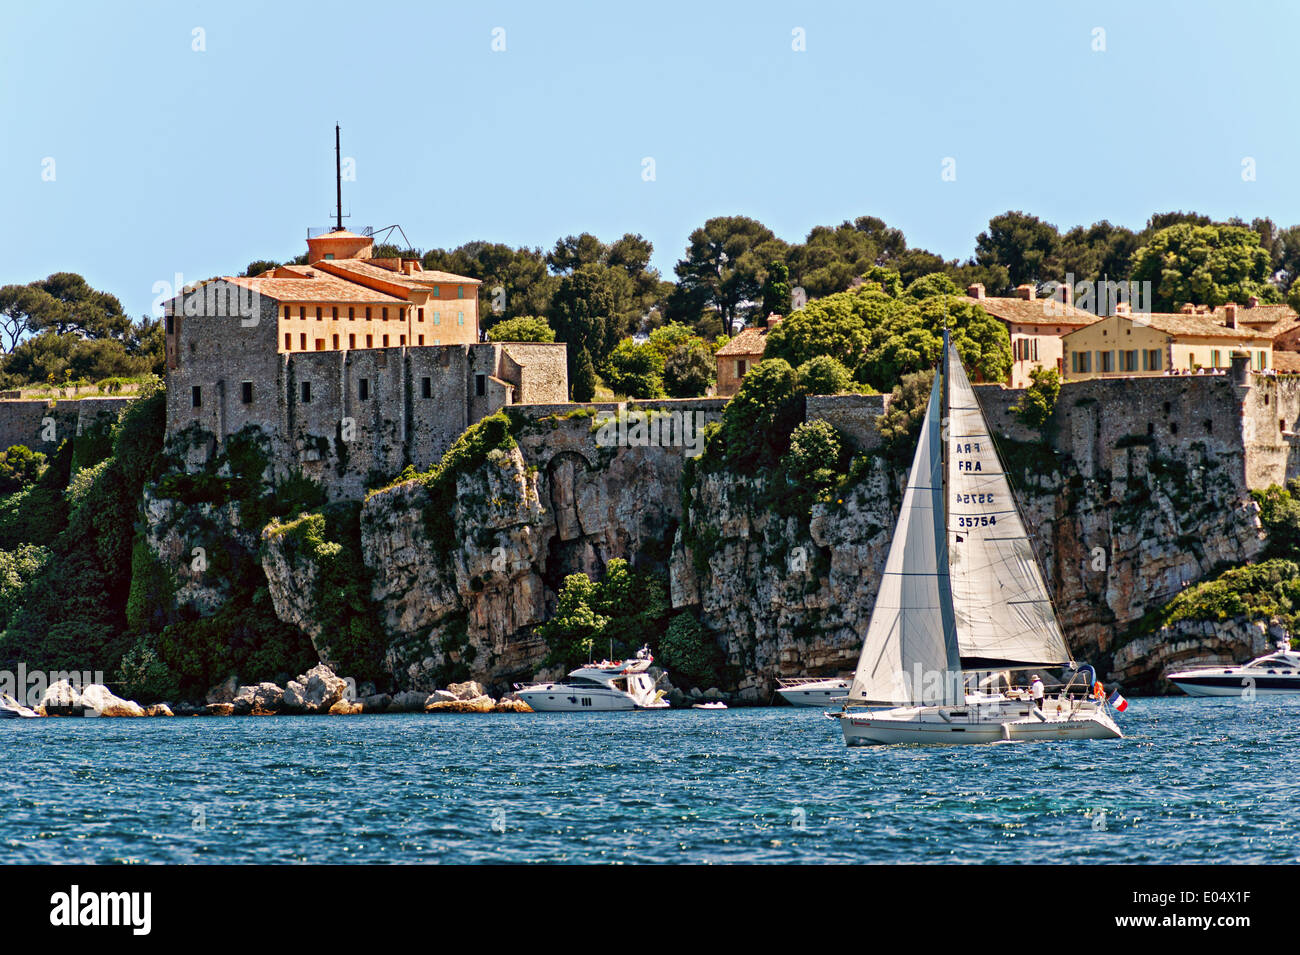 Europa, Frankreich, Alpes-Maritimes Cannes. Segelboot vor der Festung Sainte Marguerite Lerins Inseln. Stockfoto